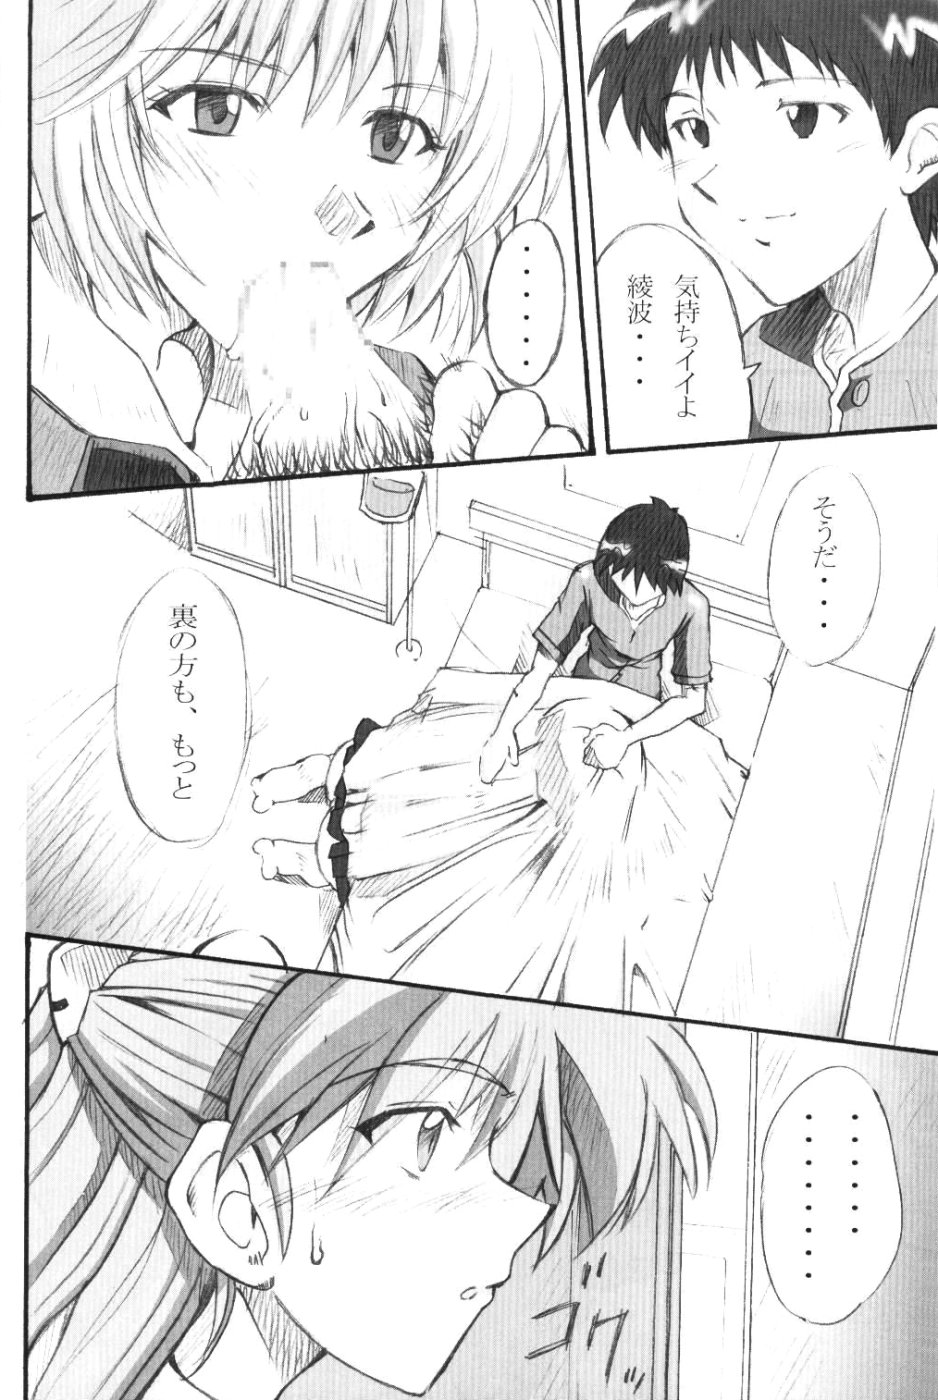 (SC23) [I&I (Naohiro)] SHINJI 01 (Neon Genesis Evangelion) page 5 full